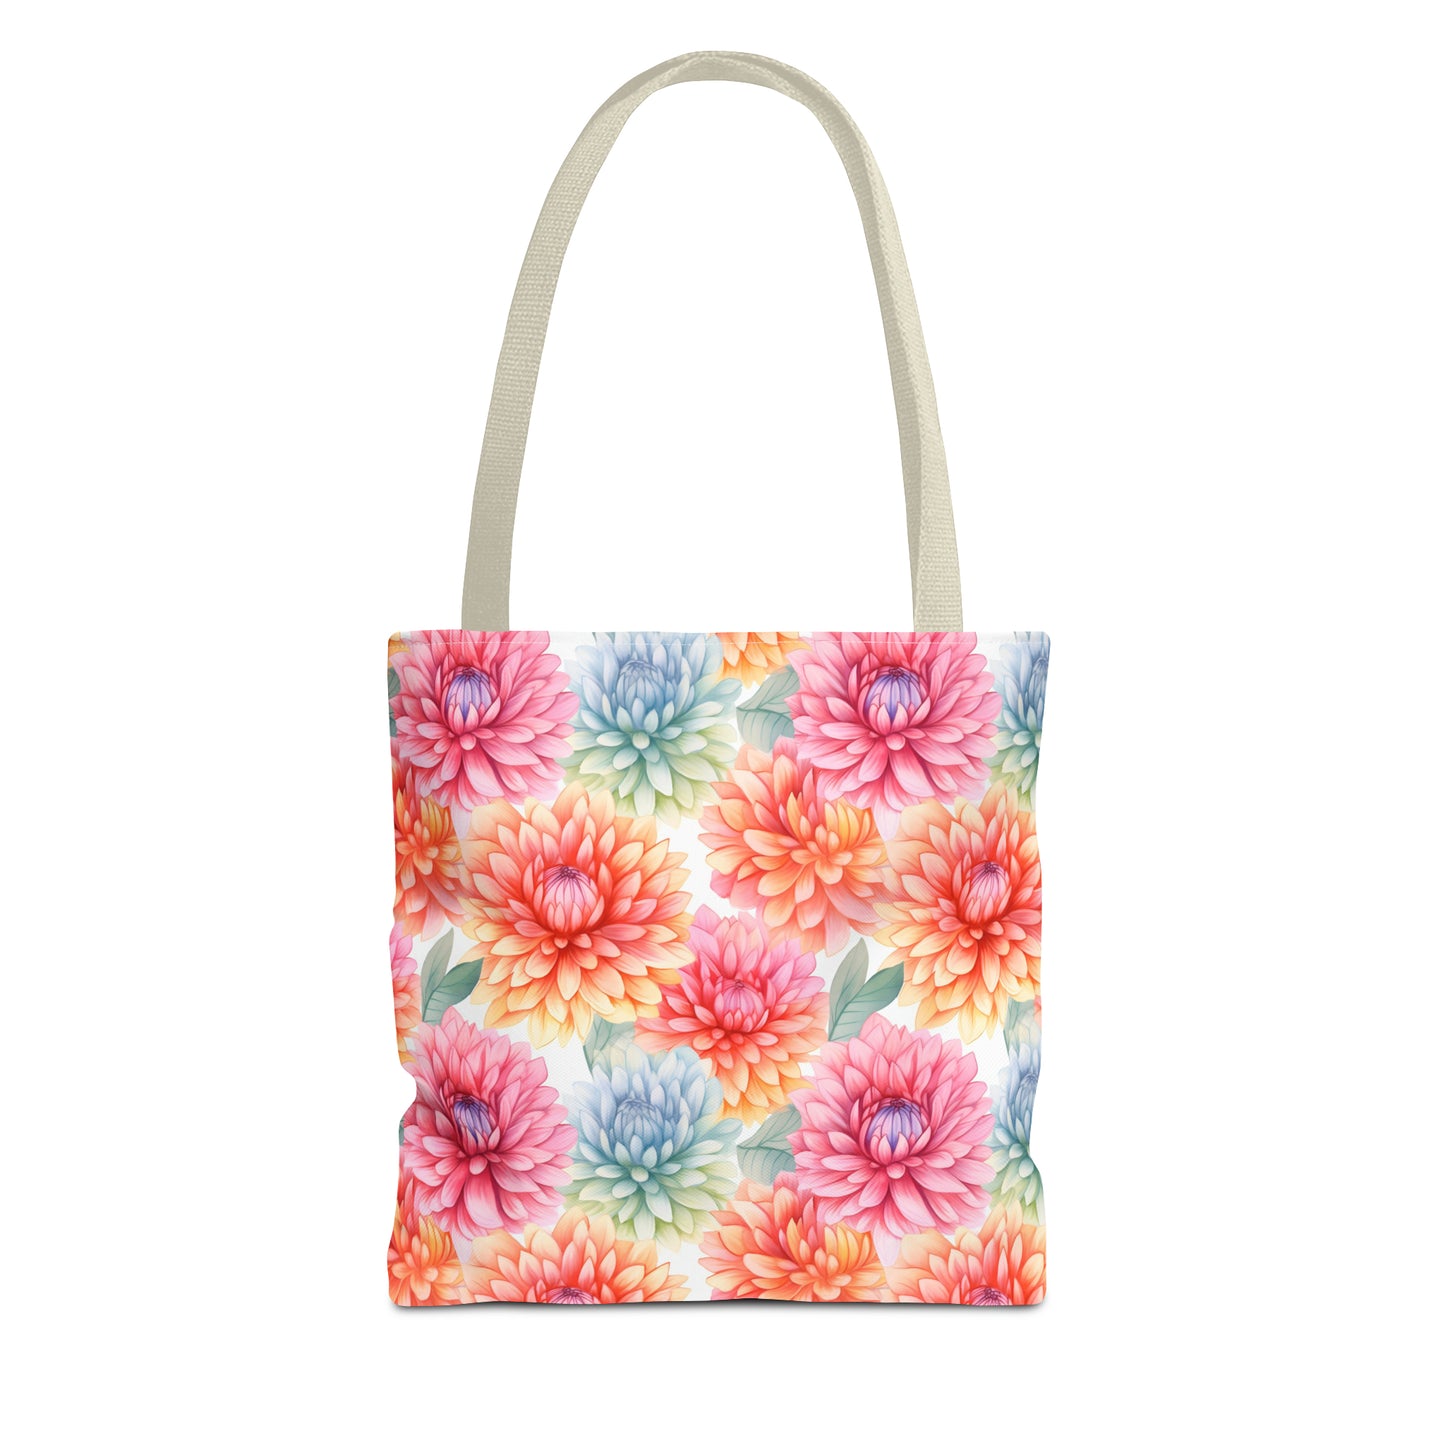 Pastel Blooms Chrysanthemum Tote Bag (13" x 13")